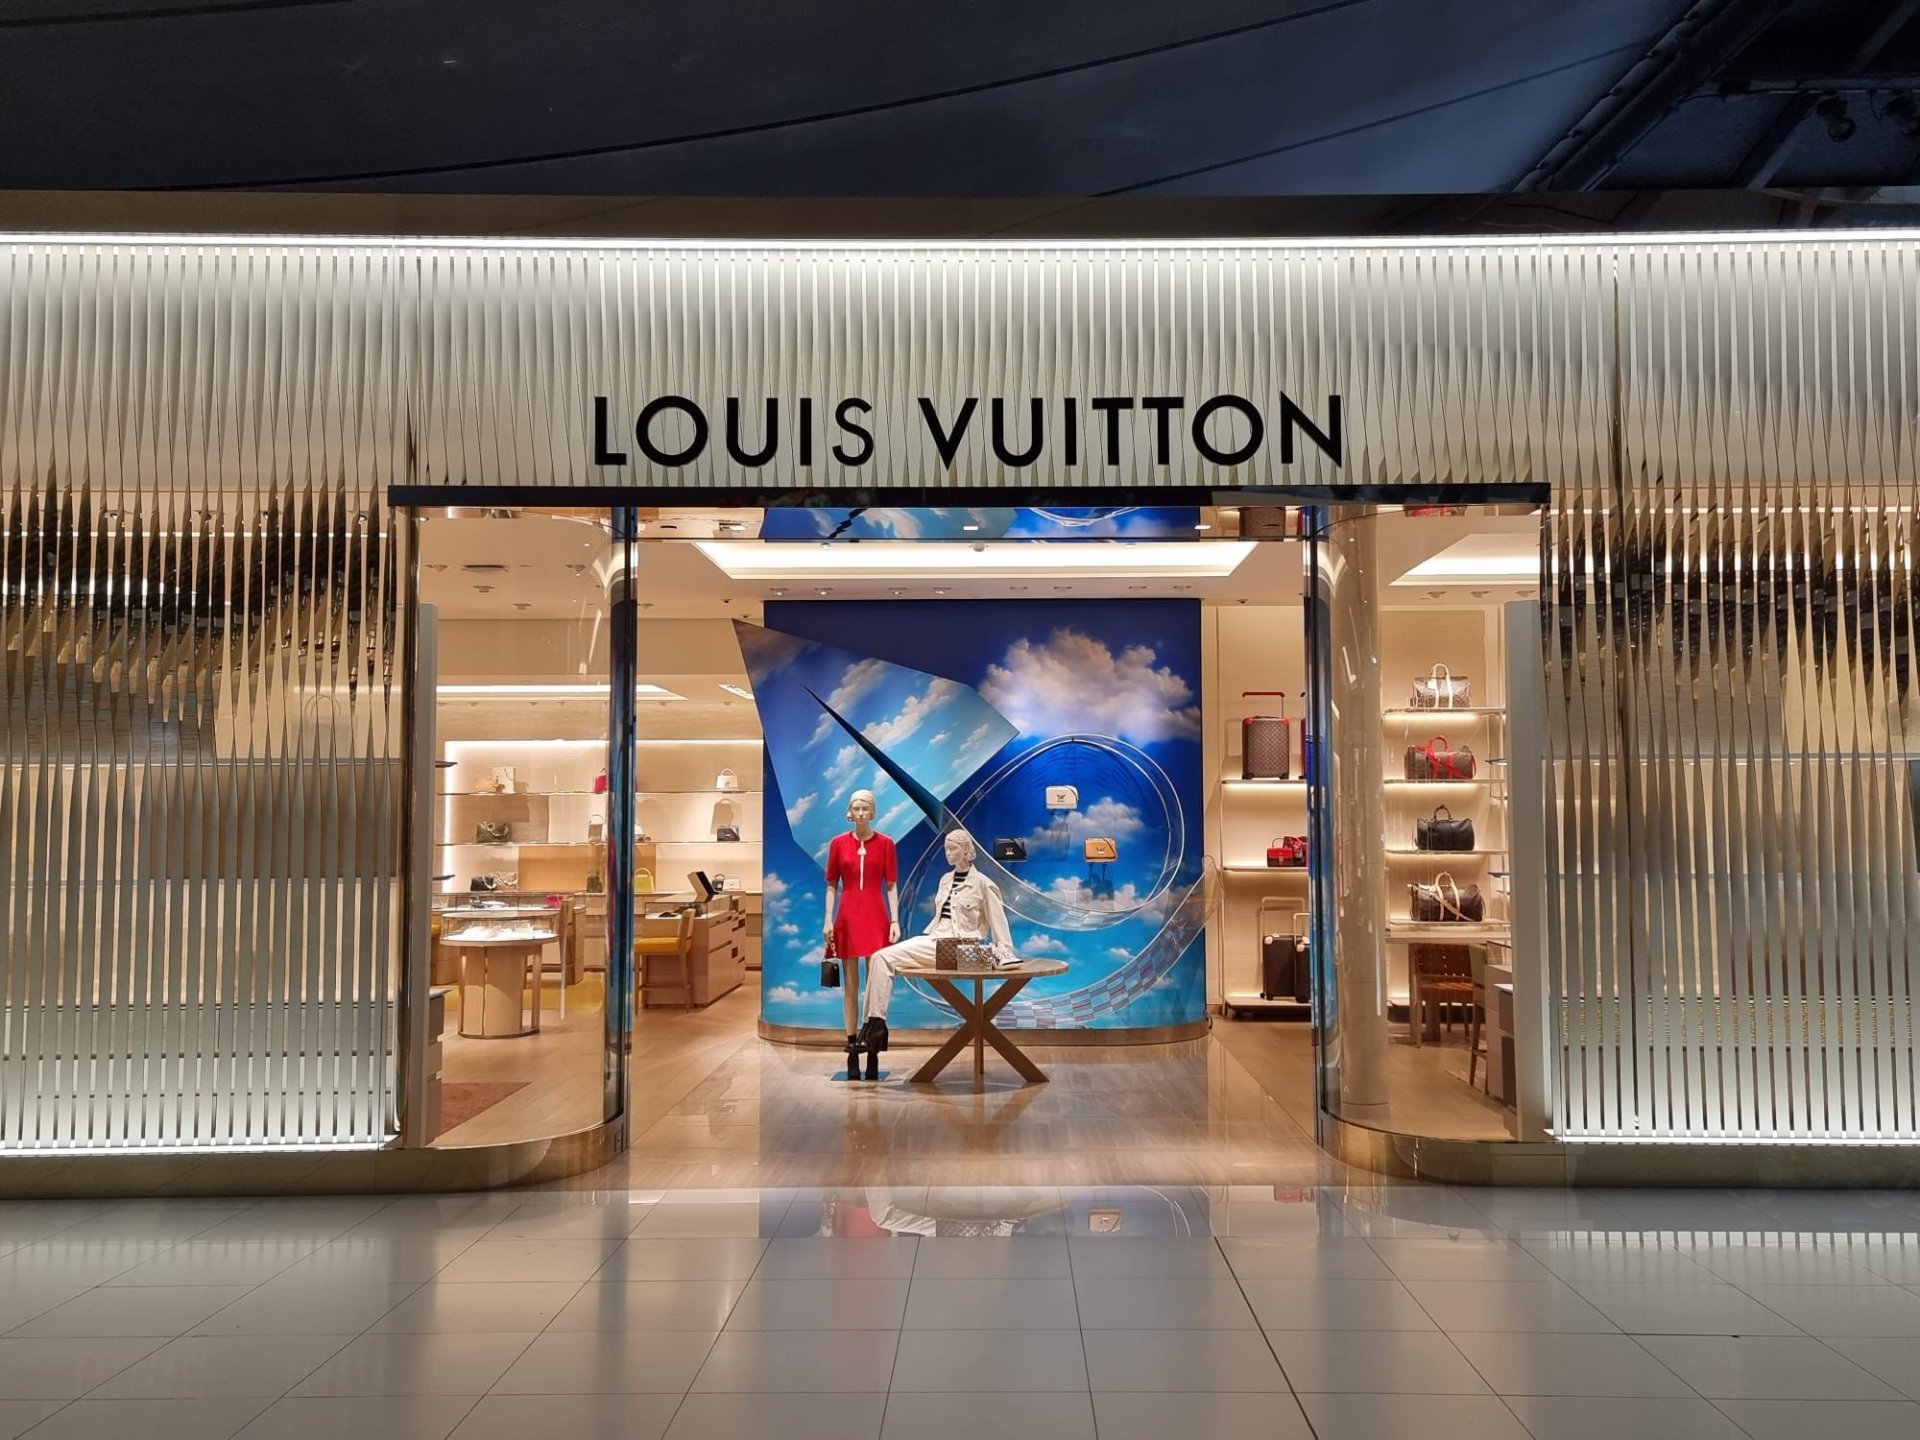 รีวิว Louis Vuitton Phuket., Gallery posted by Princess View